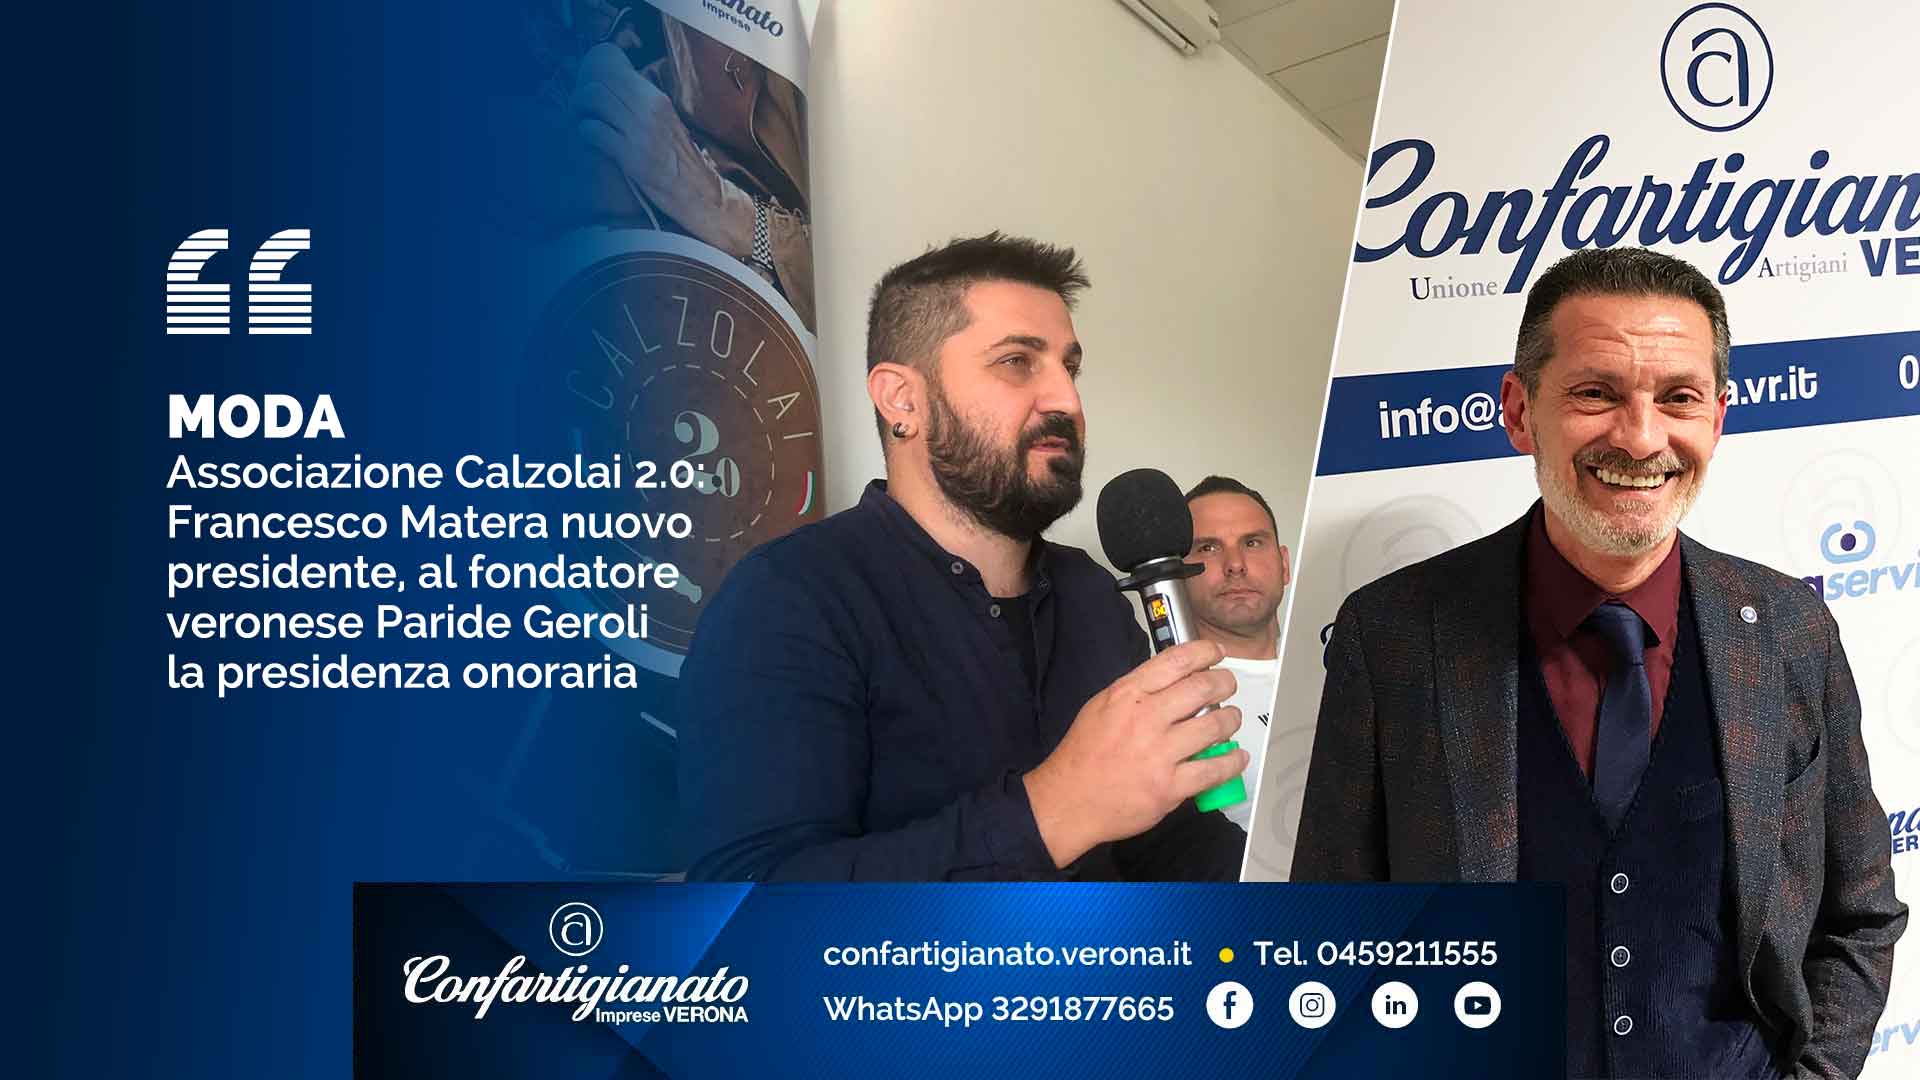 MODA – Associazione Calzolai 2.0: Francesco Matera nuovo presidente, al fondatore veronese Paride Geroli la presidenza onoraria